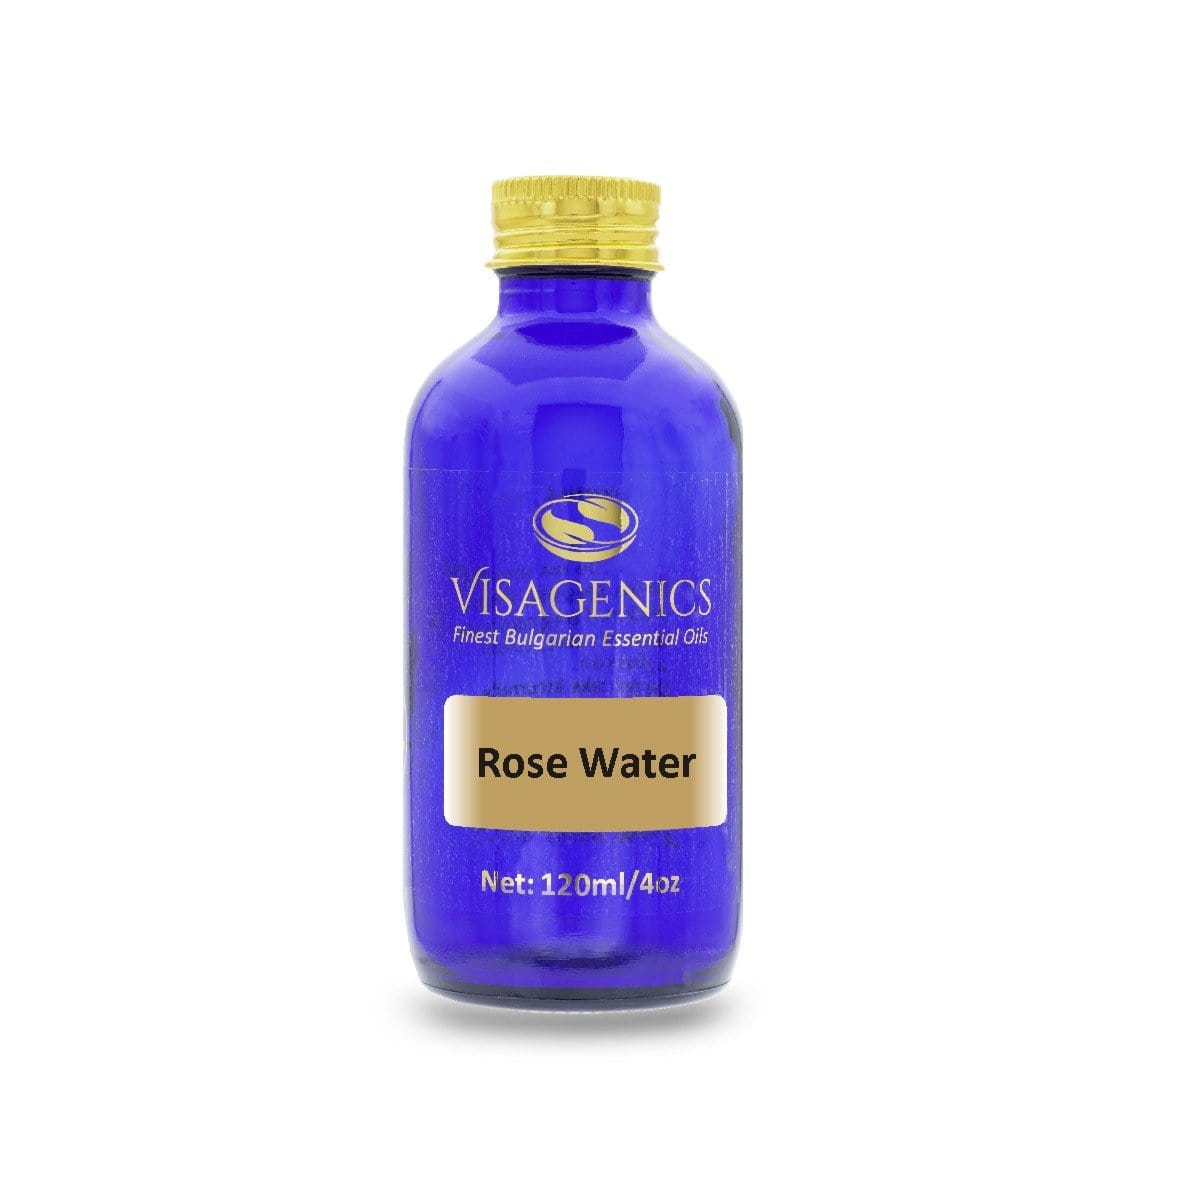 Rose Water - Premium quality | 100% Natural Skin Toner